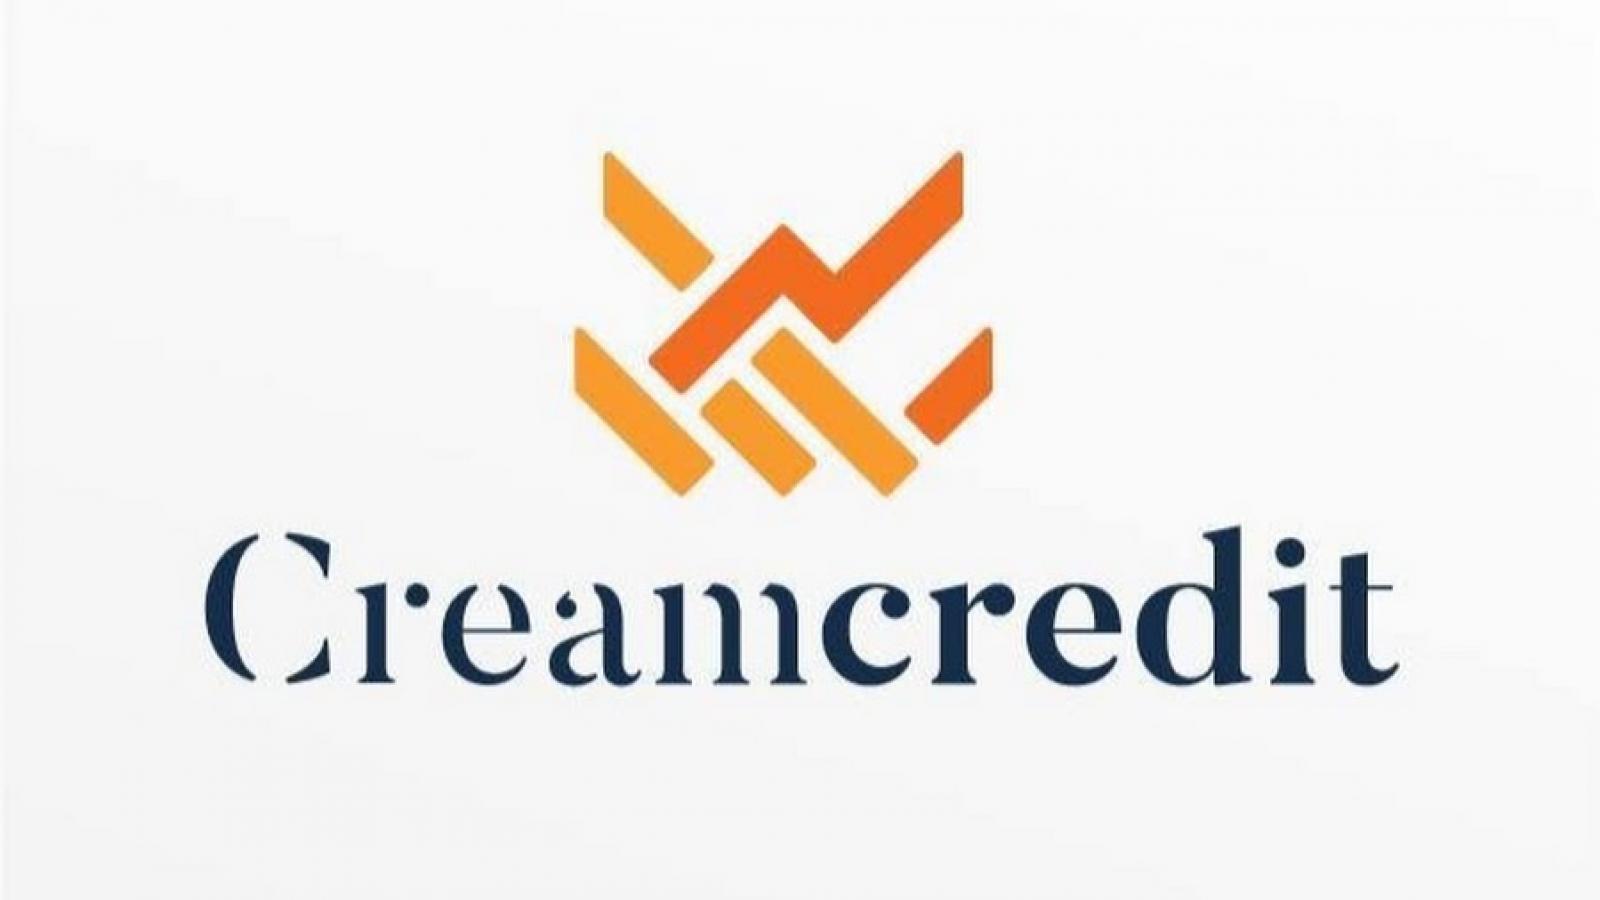 Creamcredit – быстрое и прозрачное кредитование в Латвии